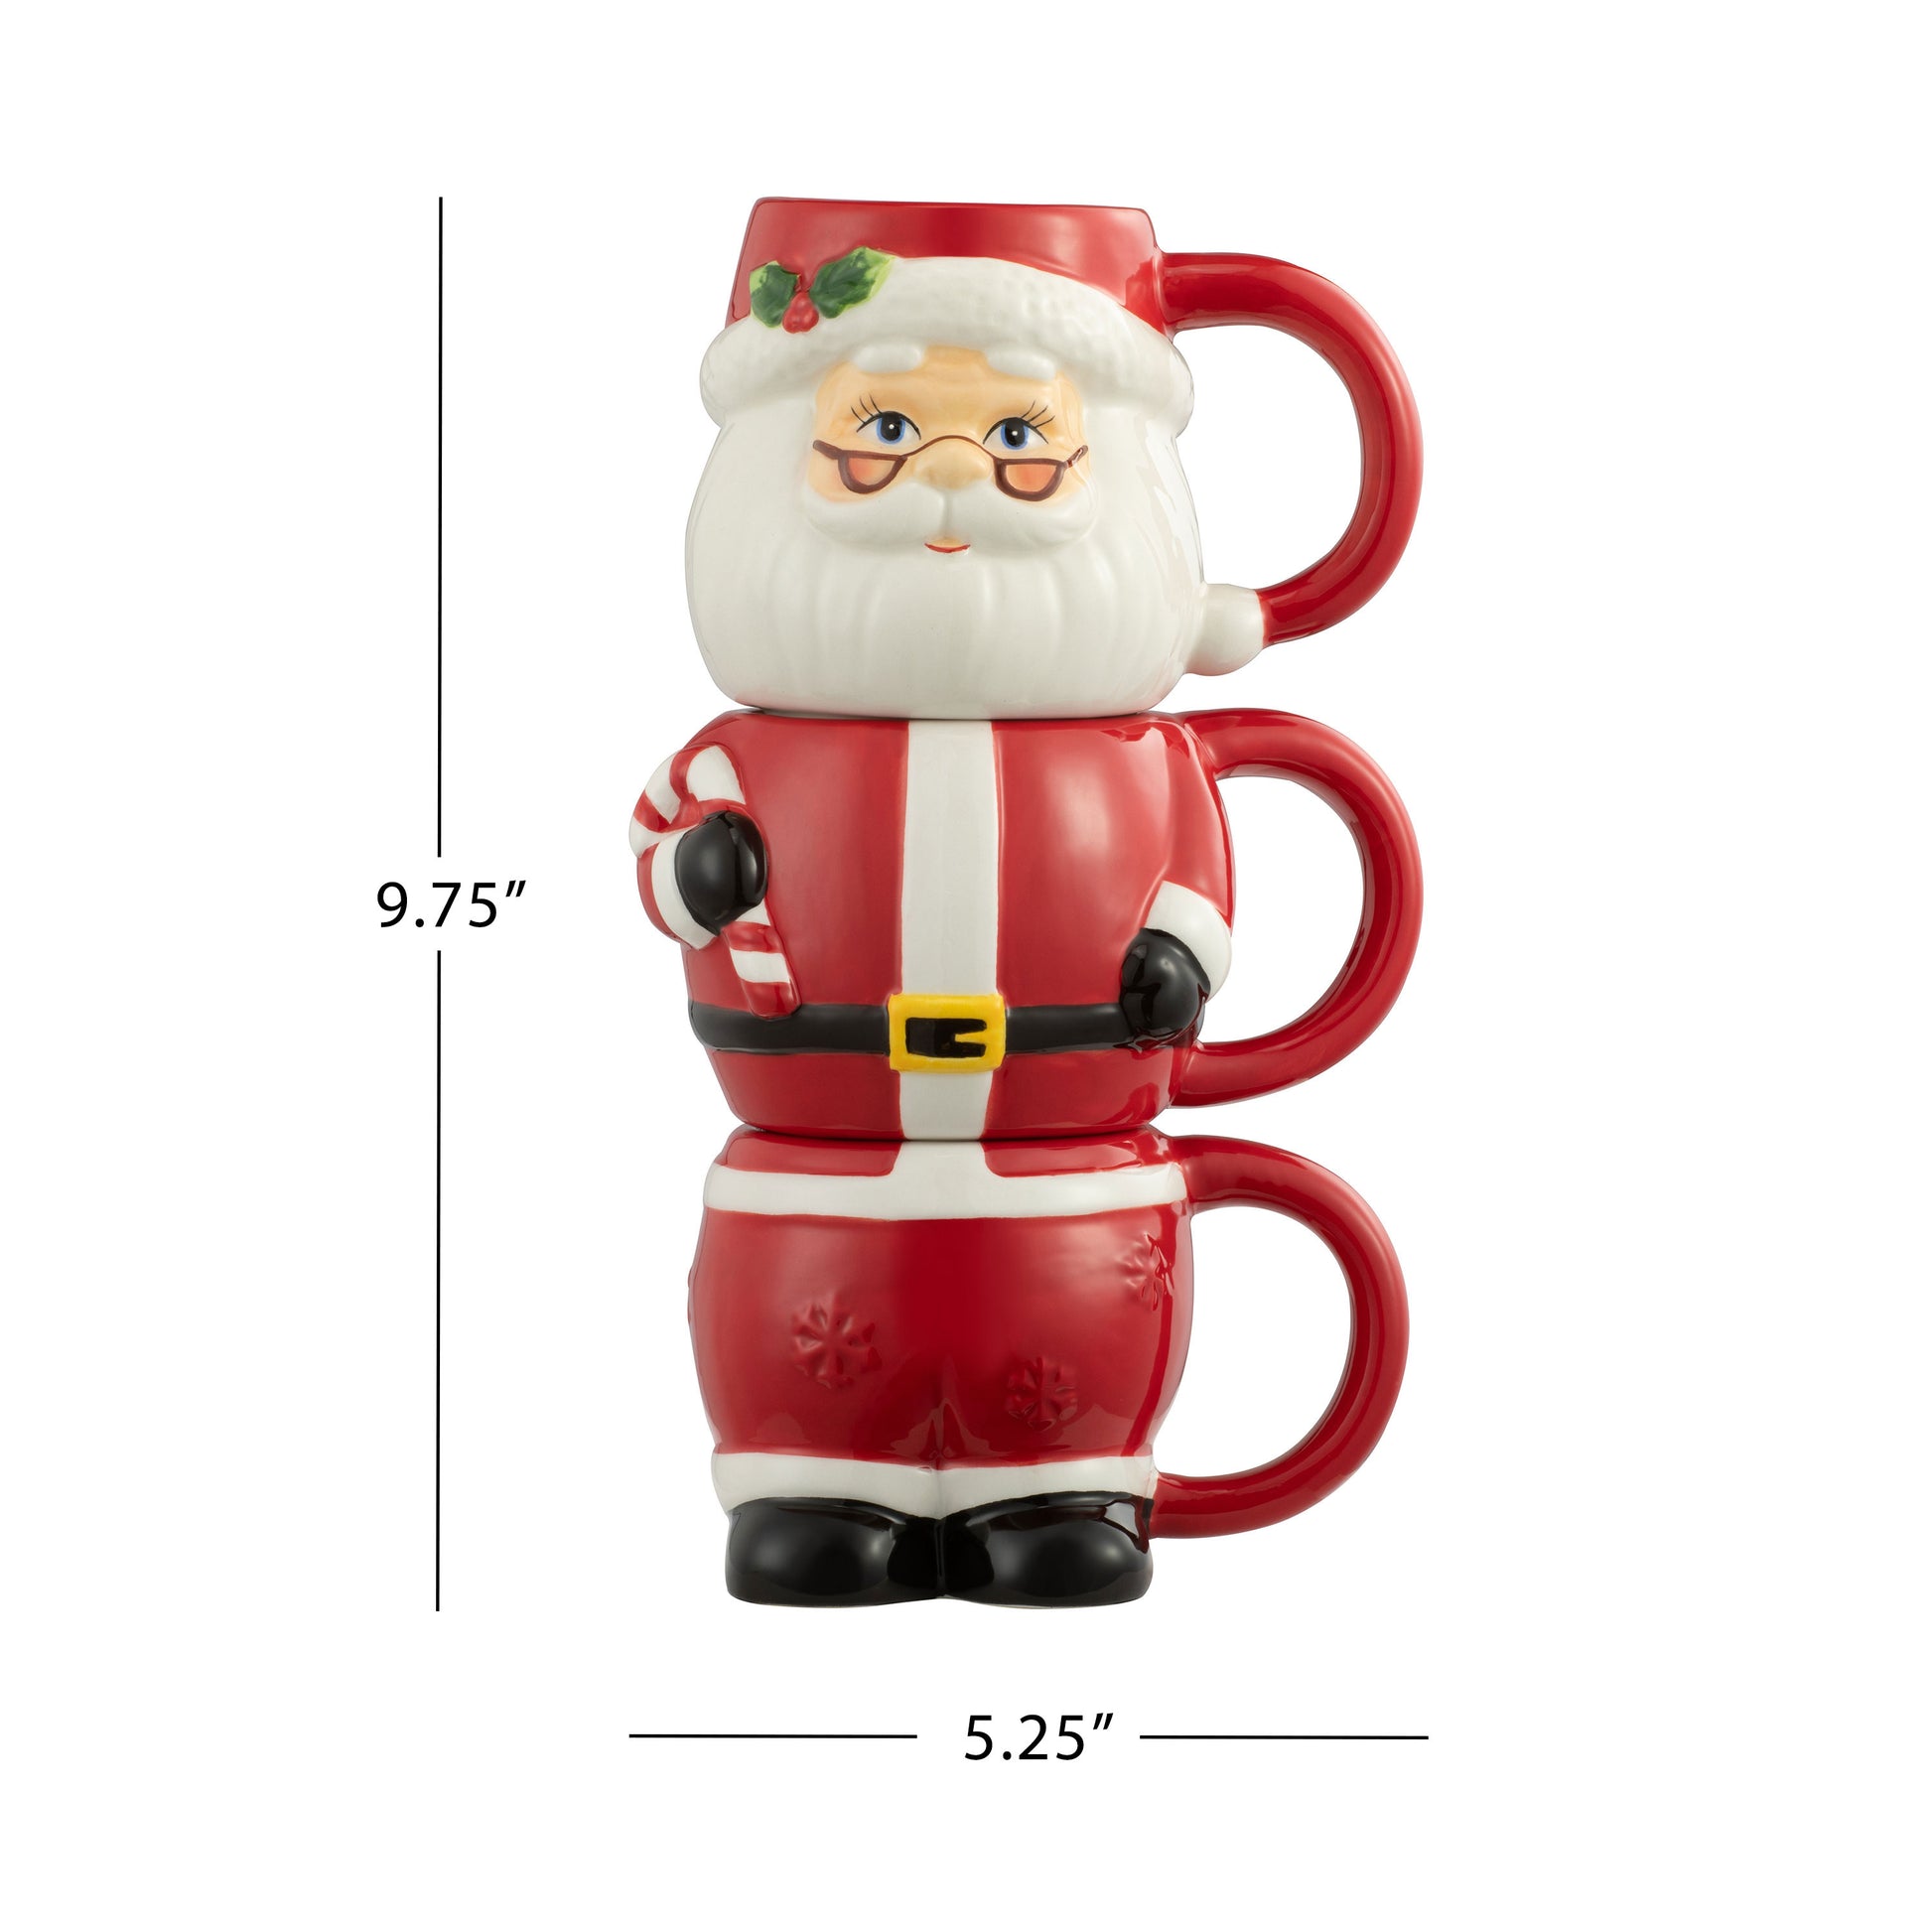 12oz Set of 3 Ceramic Stacking Mugs - Santa